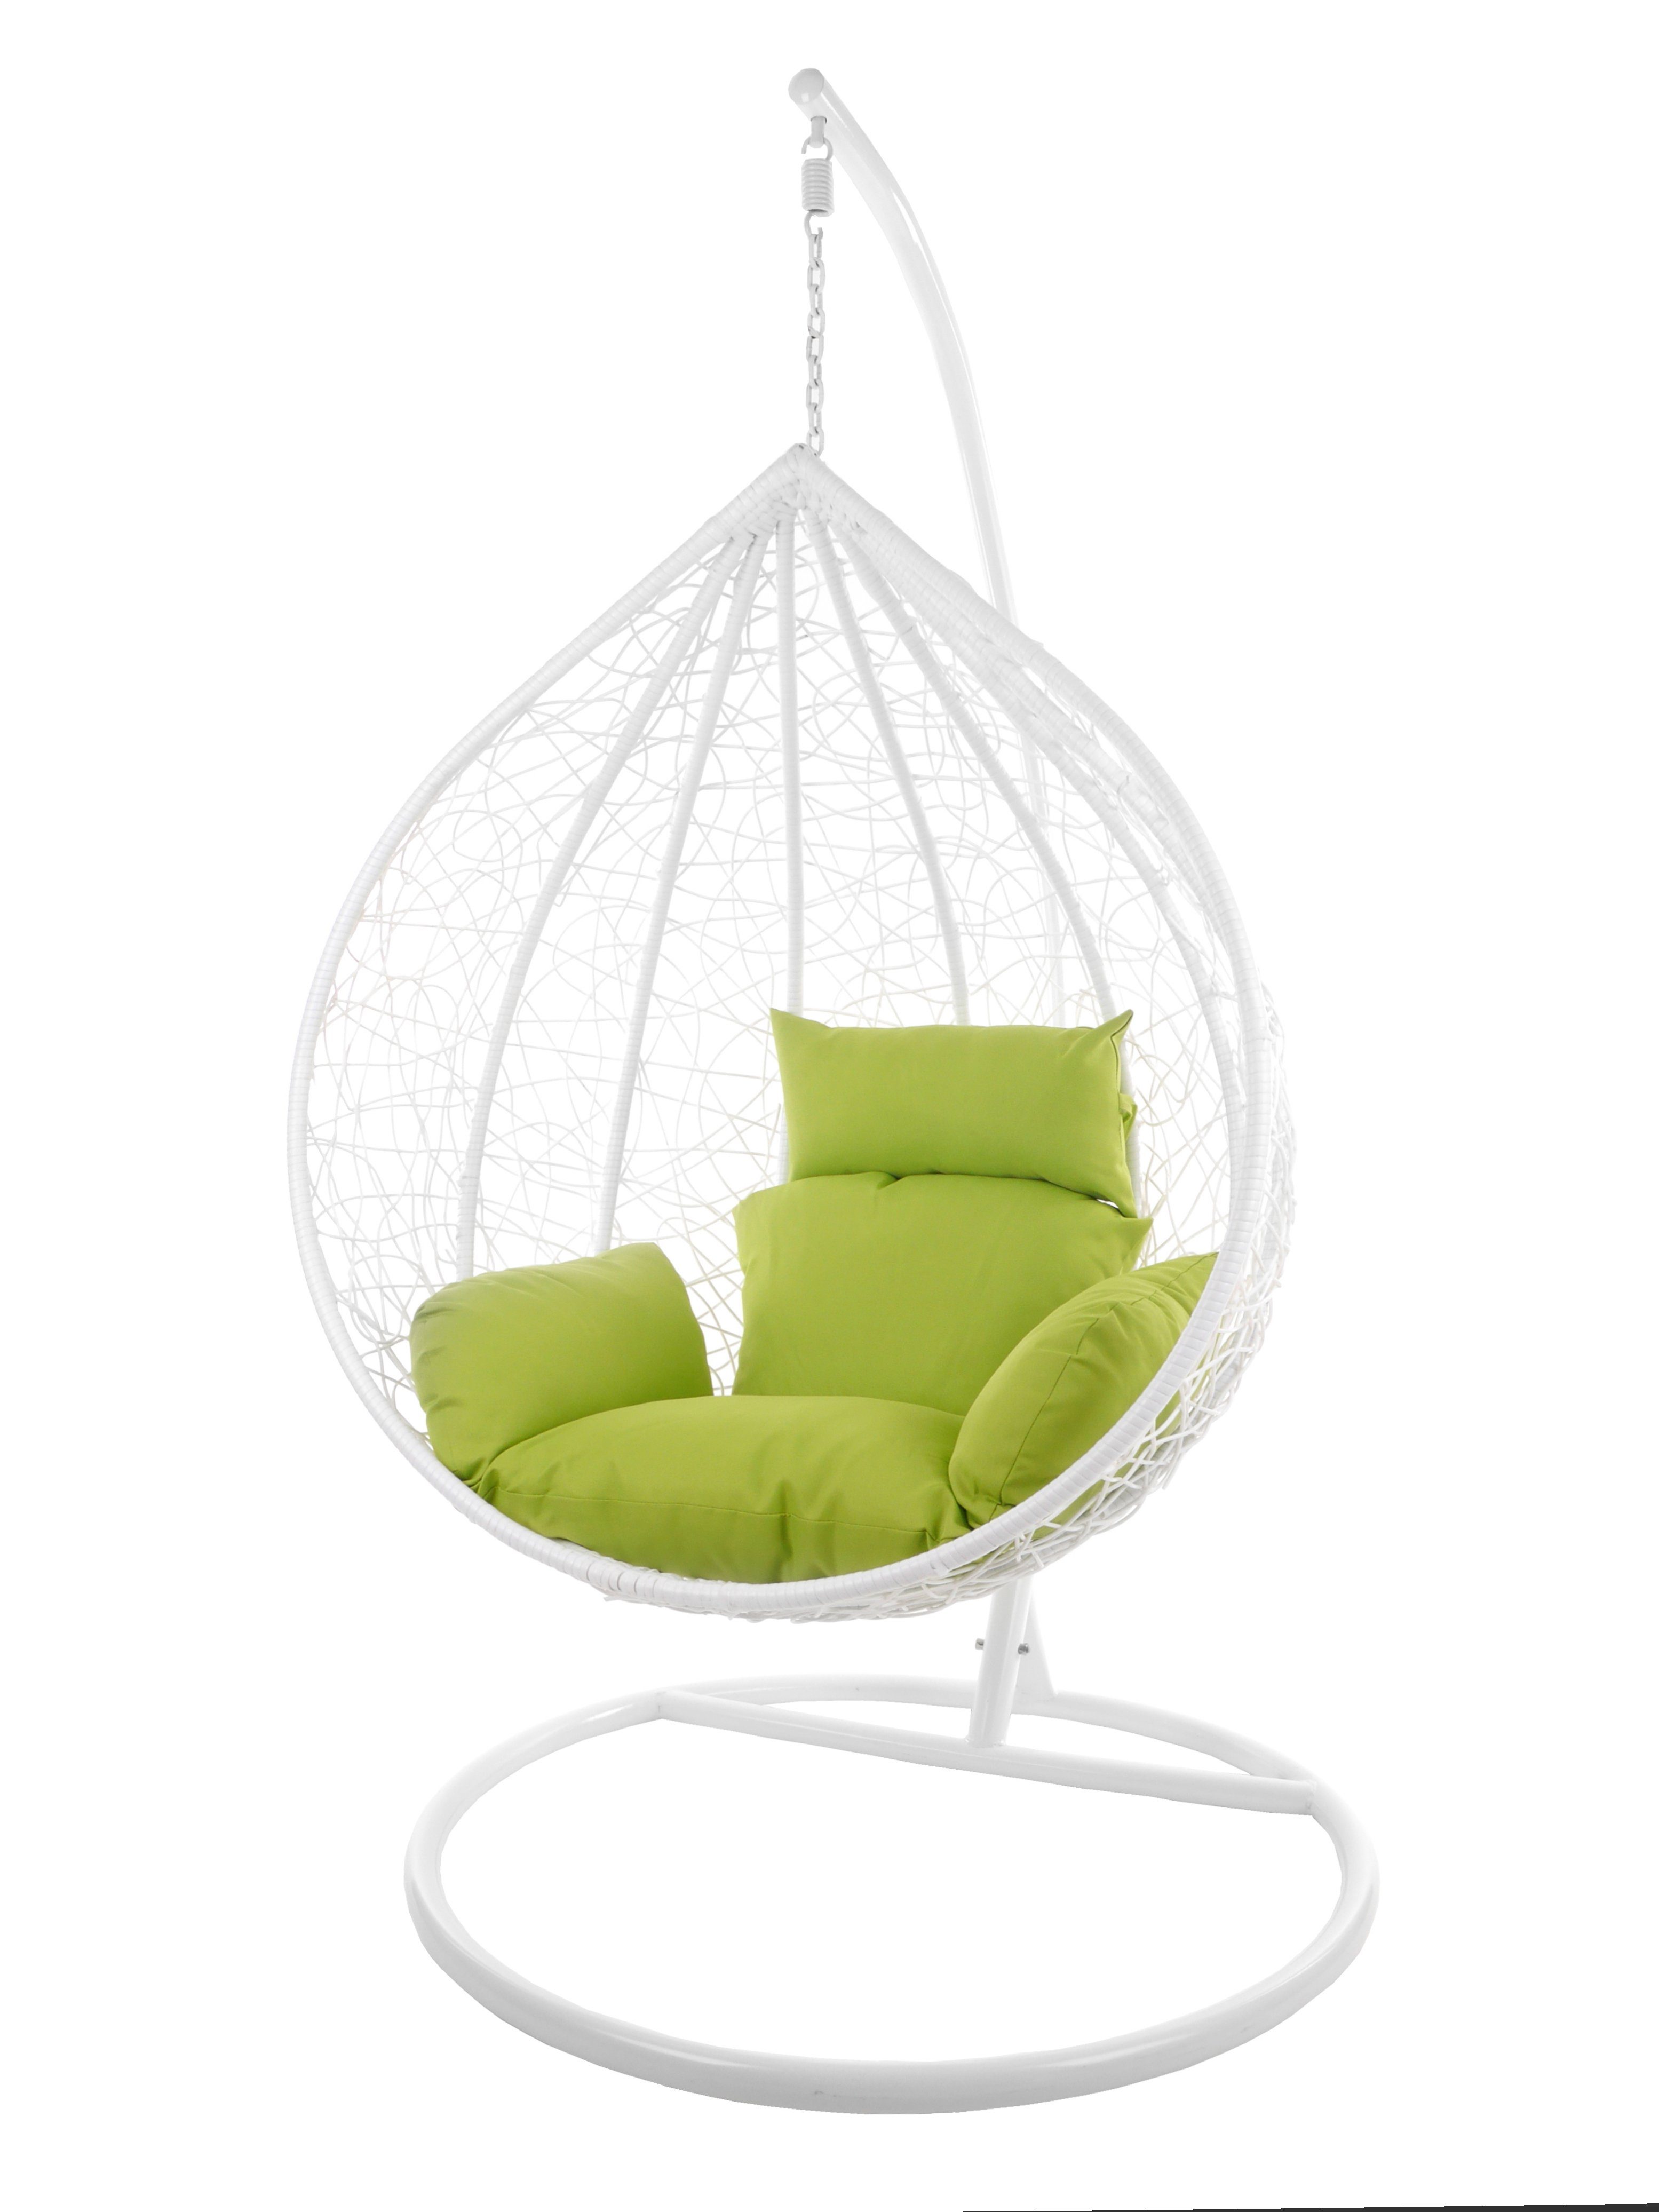 KIDEO Hängesessel Hängesessel MANACOR weiß, XXL Swing Chair, großer Hängesessel mit Gestell und Kissen, Loungemöbel, weiß apfelgrün (6068 apple green)